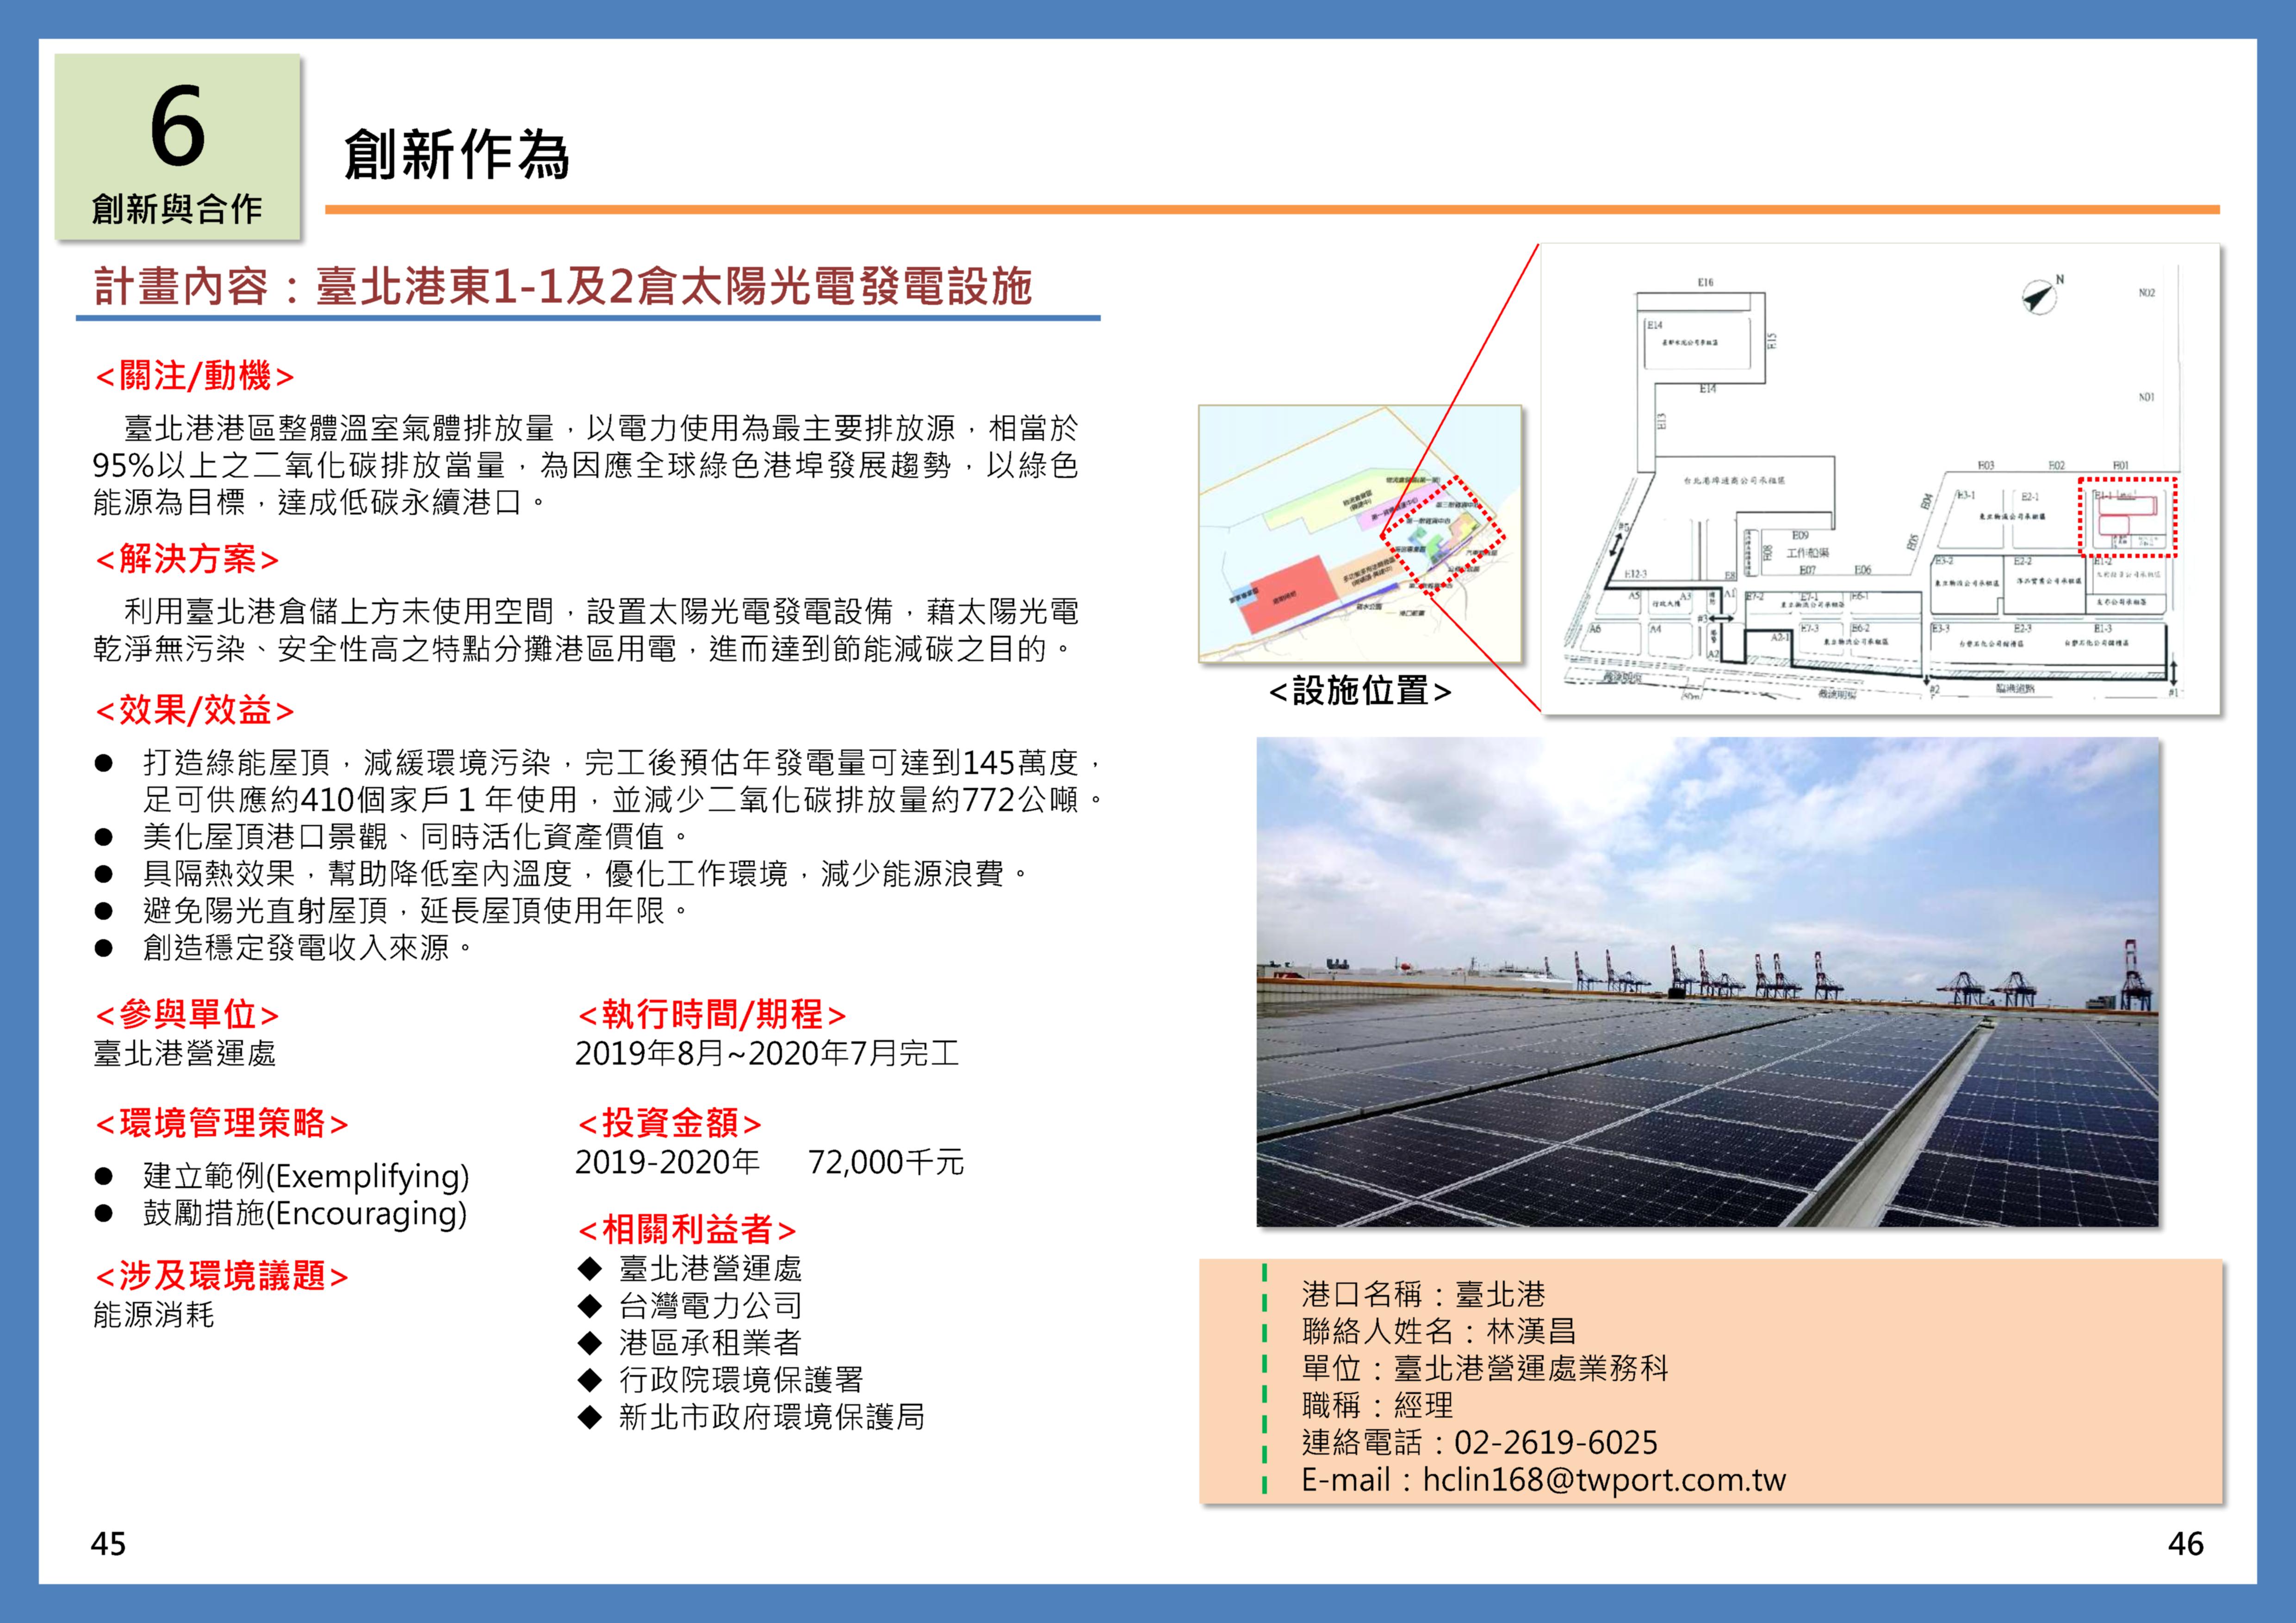 臺北港東1-1及2倉太陽光電發電設施